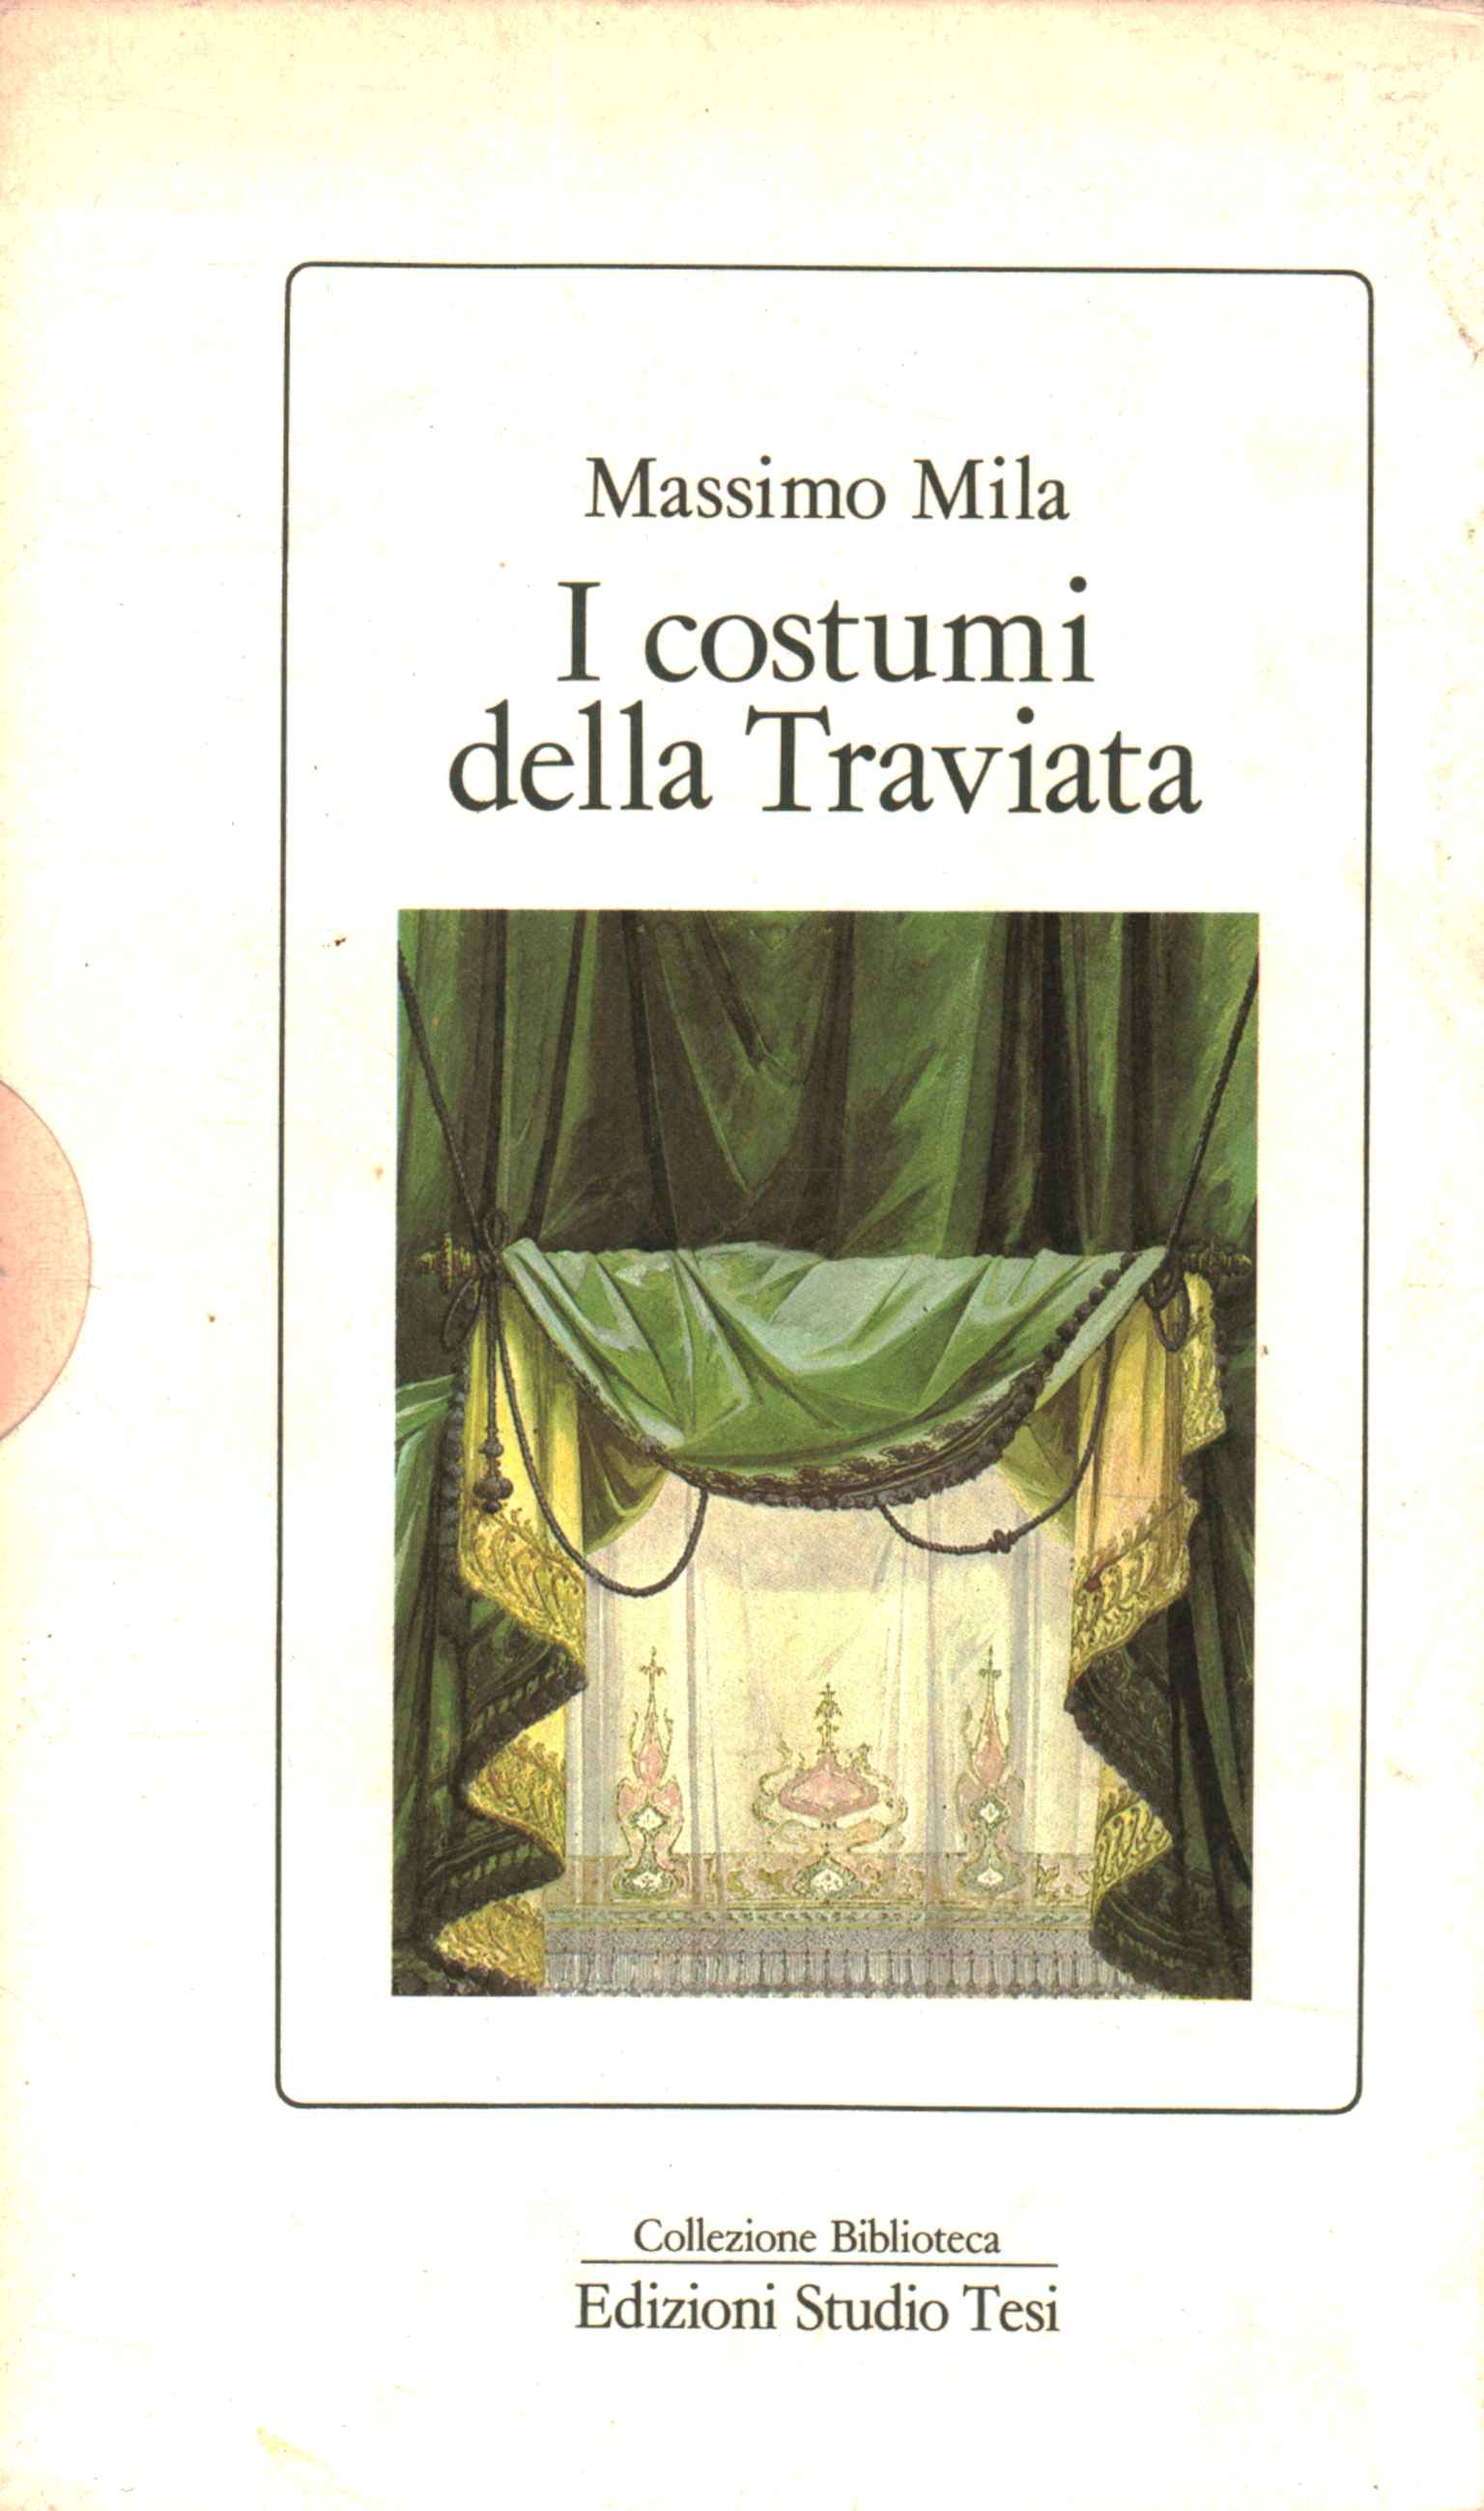 Die Kostüme von La Traviata